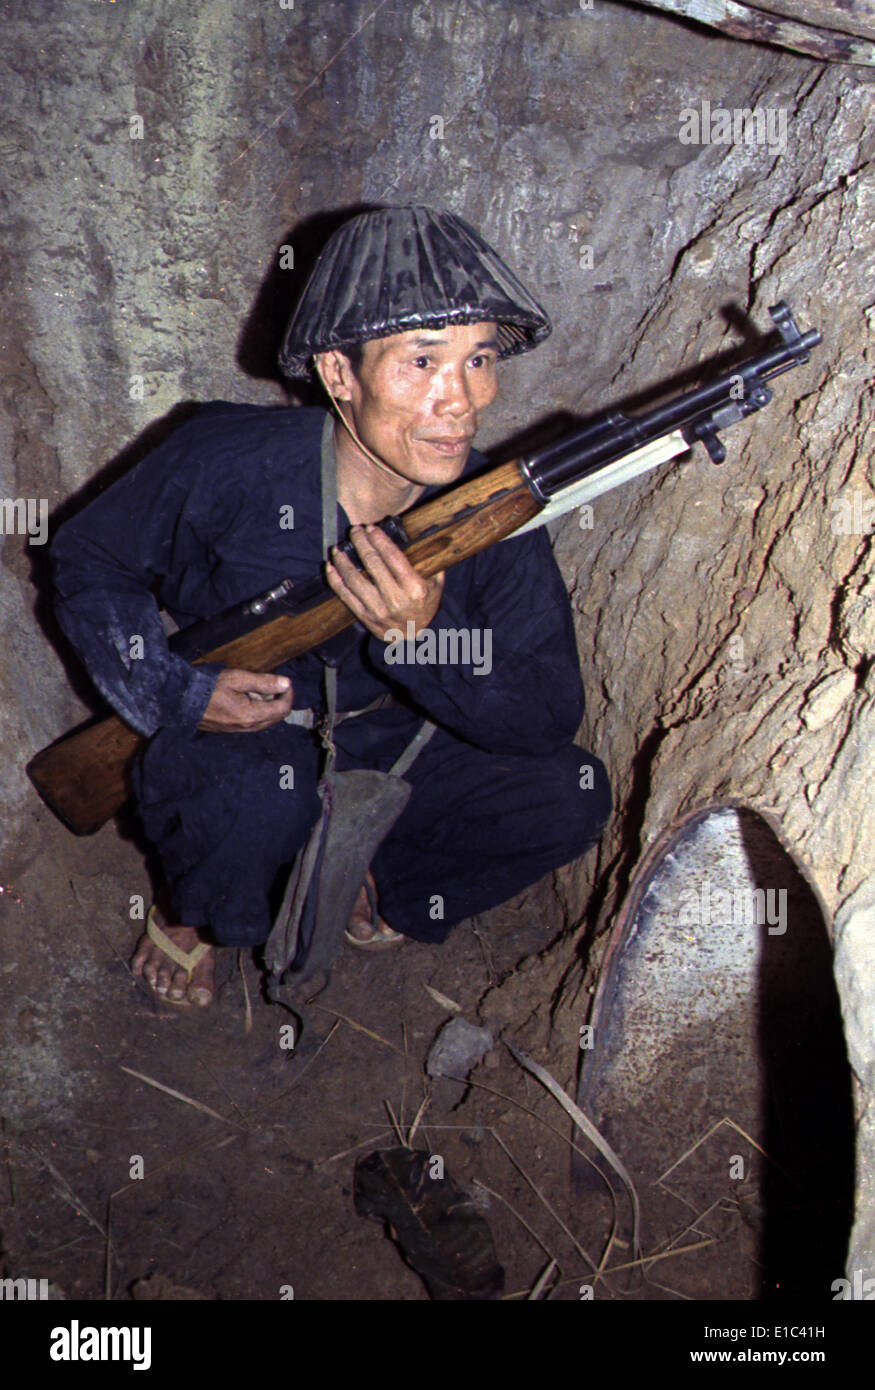 Guerra del Vietnam, un Viet Cong, soldato si accovaccia in un bunker con un fucile SKS, risalente alla fine degli anni sessanta Foto Stock